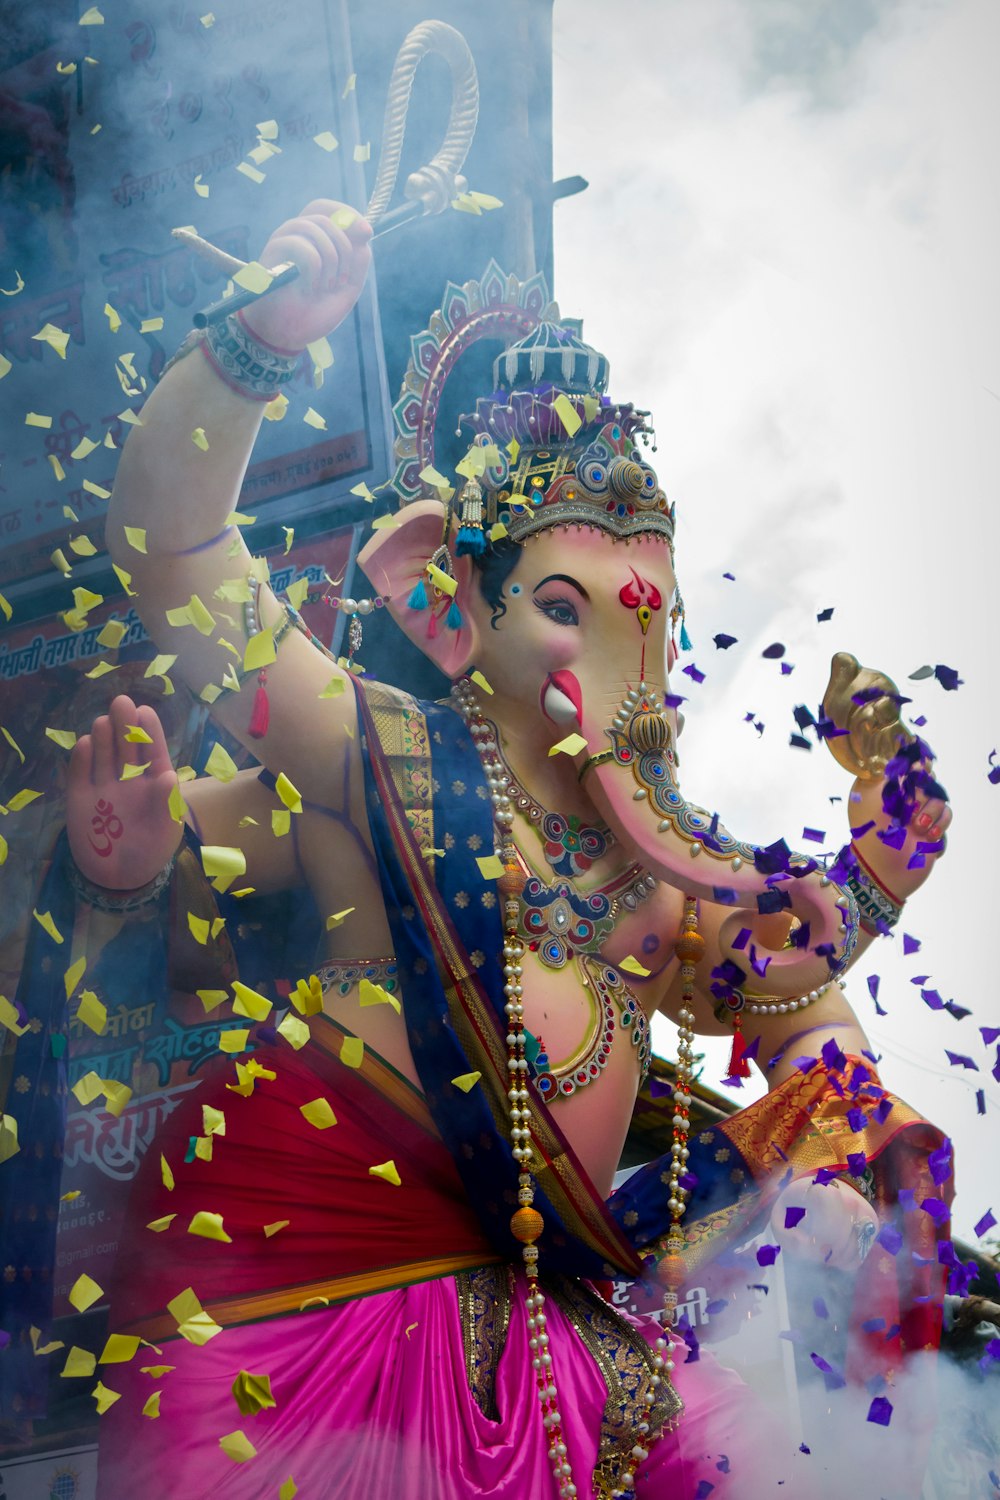 hindu deity statue under blue sky during daytime